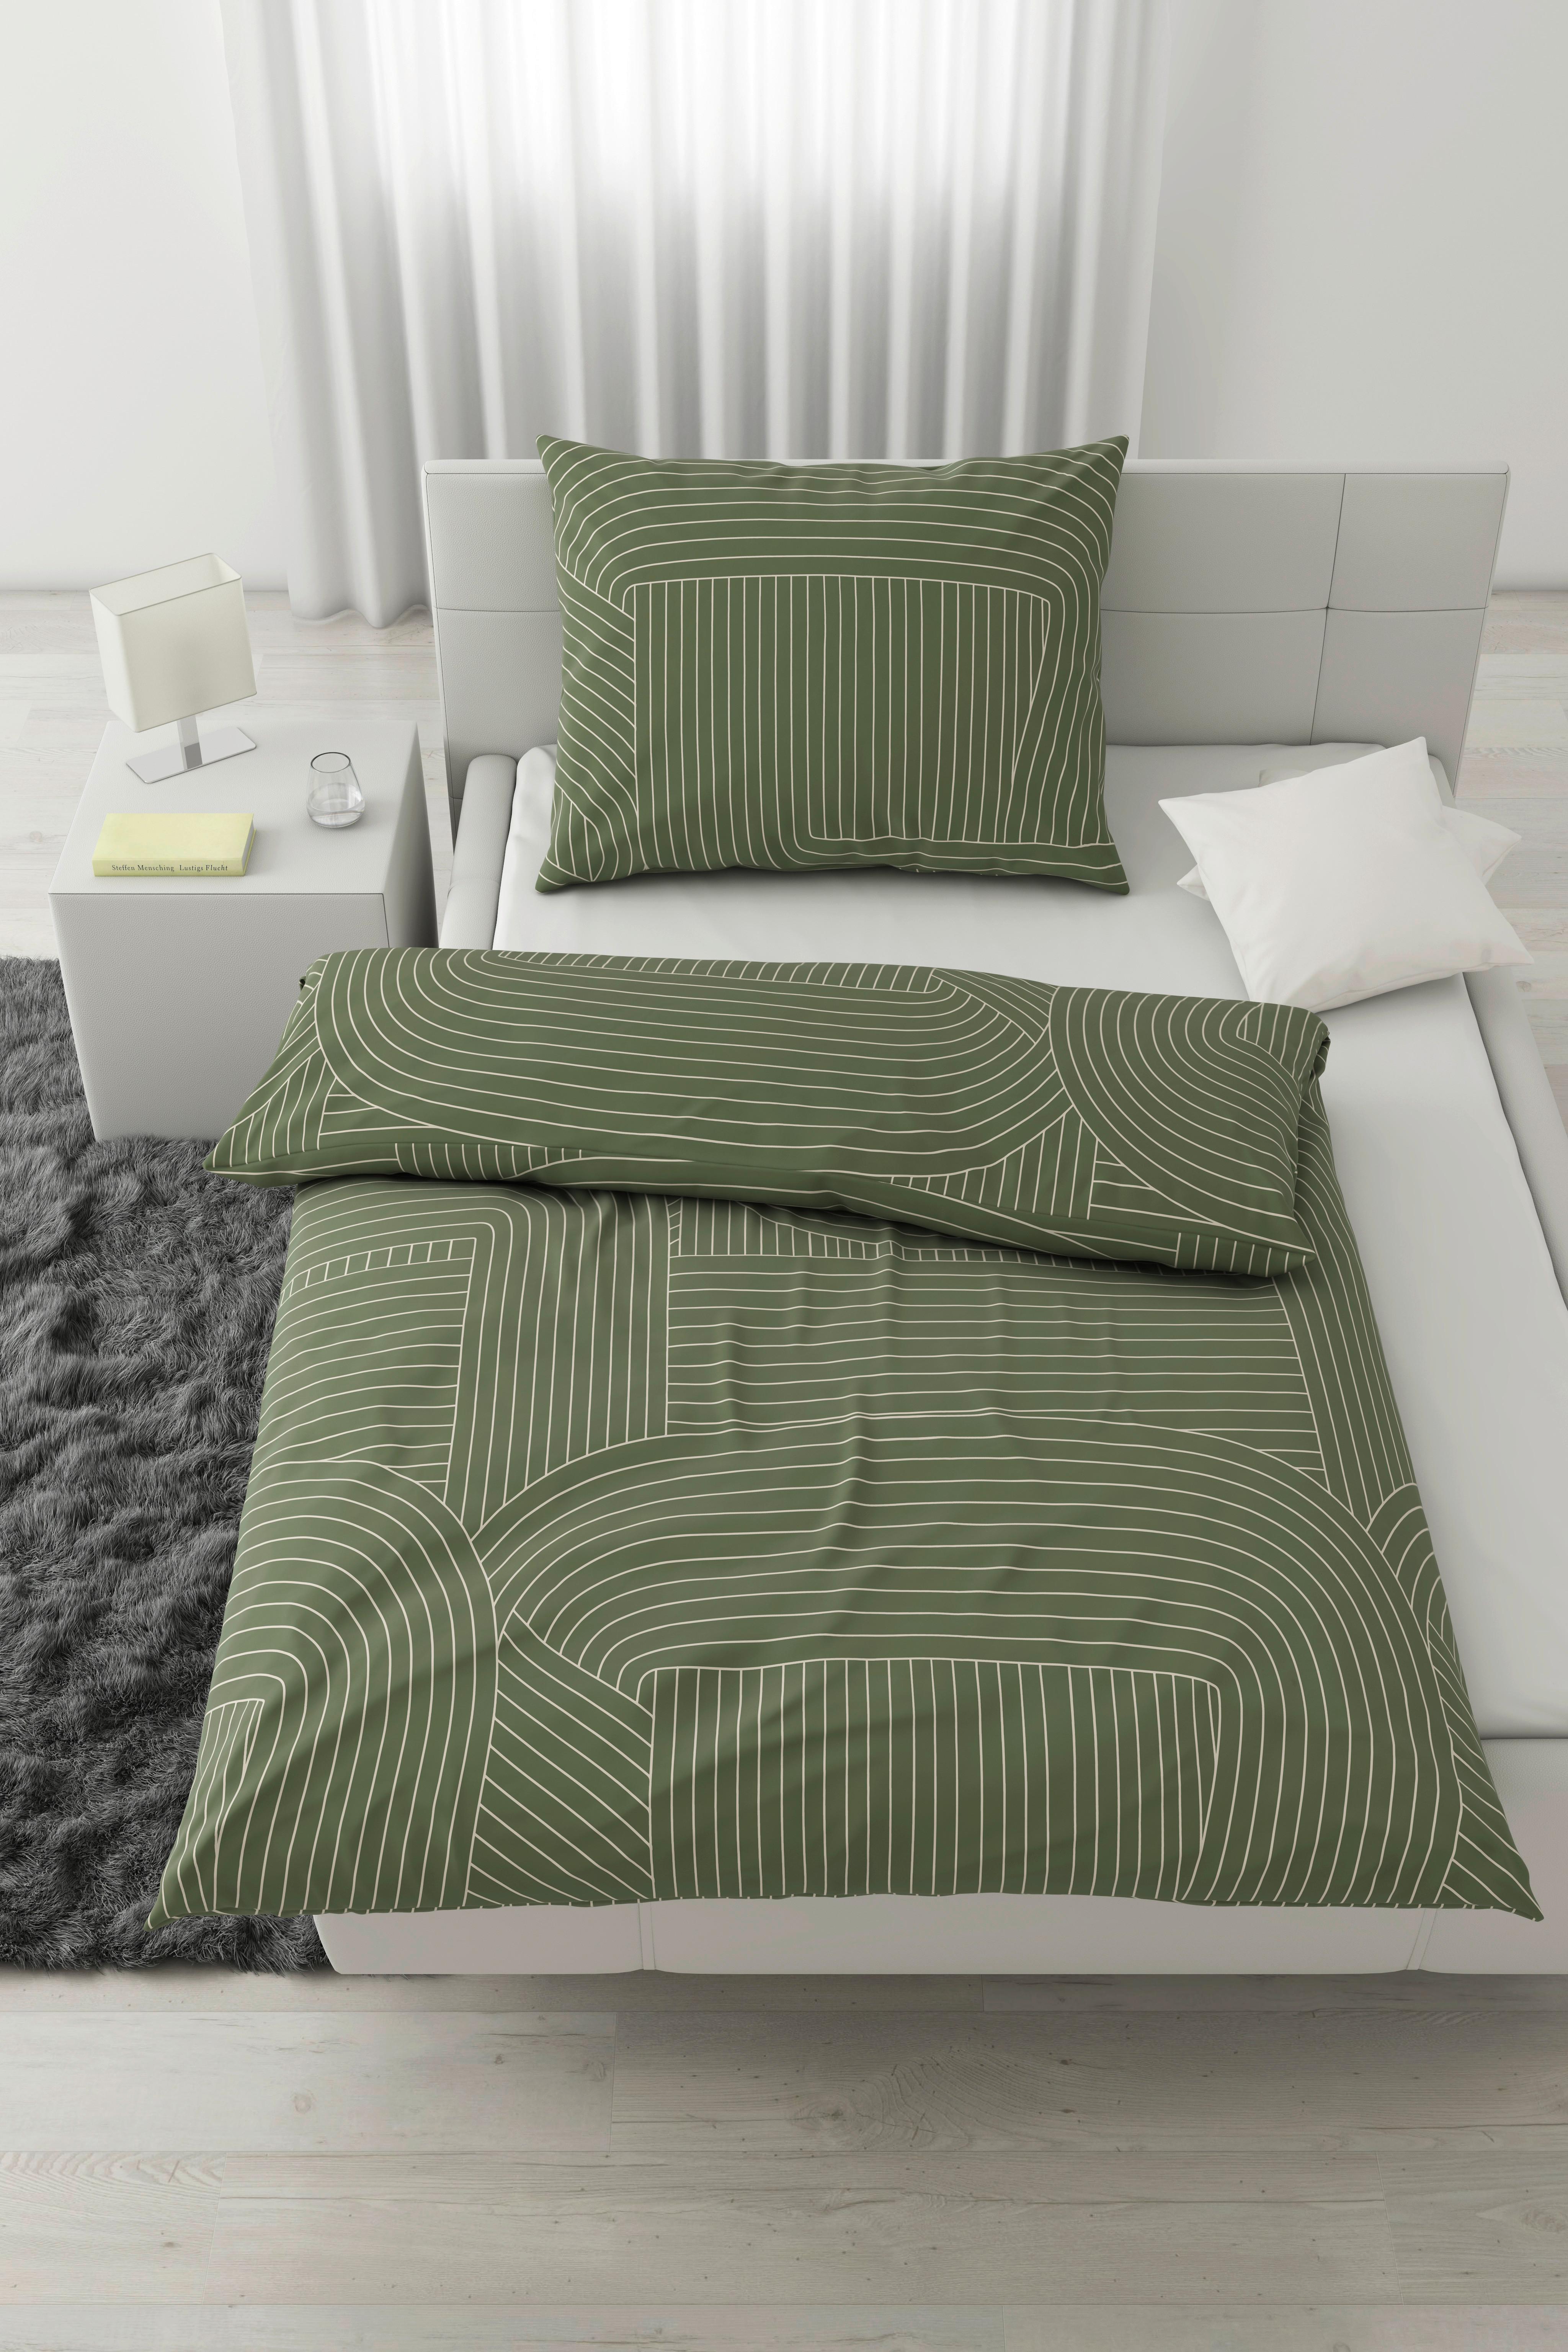 Povlečení Scribble, 140/200cm - zelená/béžová, Moderní, textil (140/200cm) - Modern Living